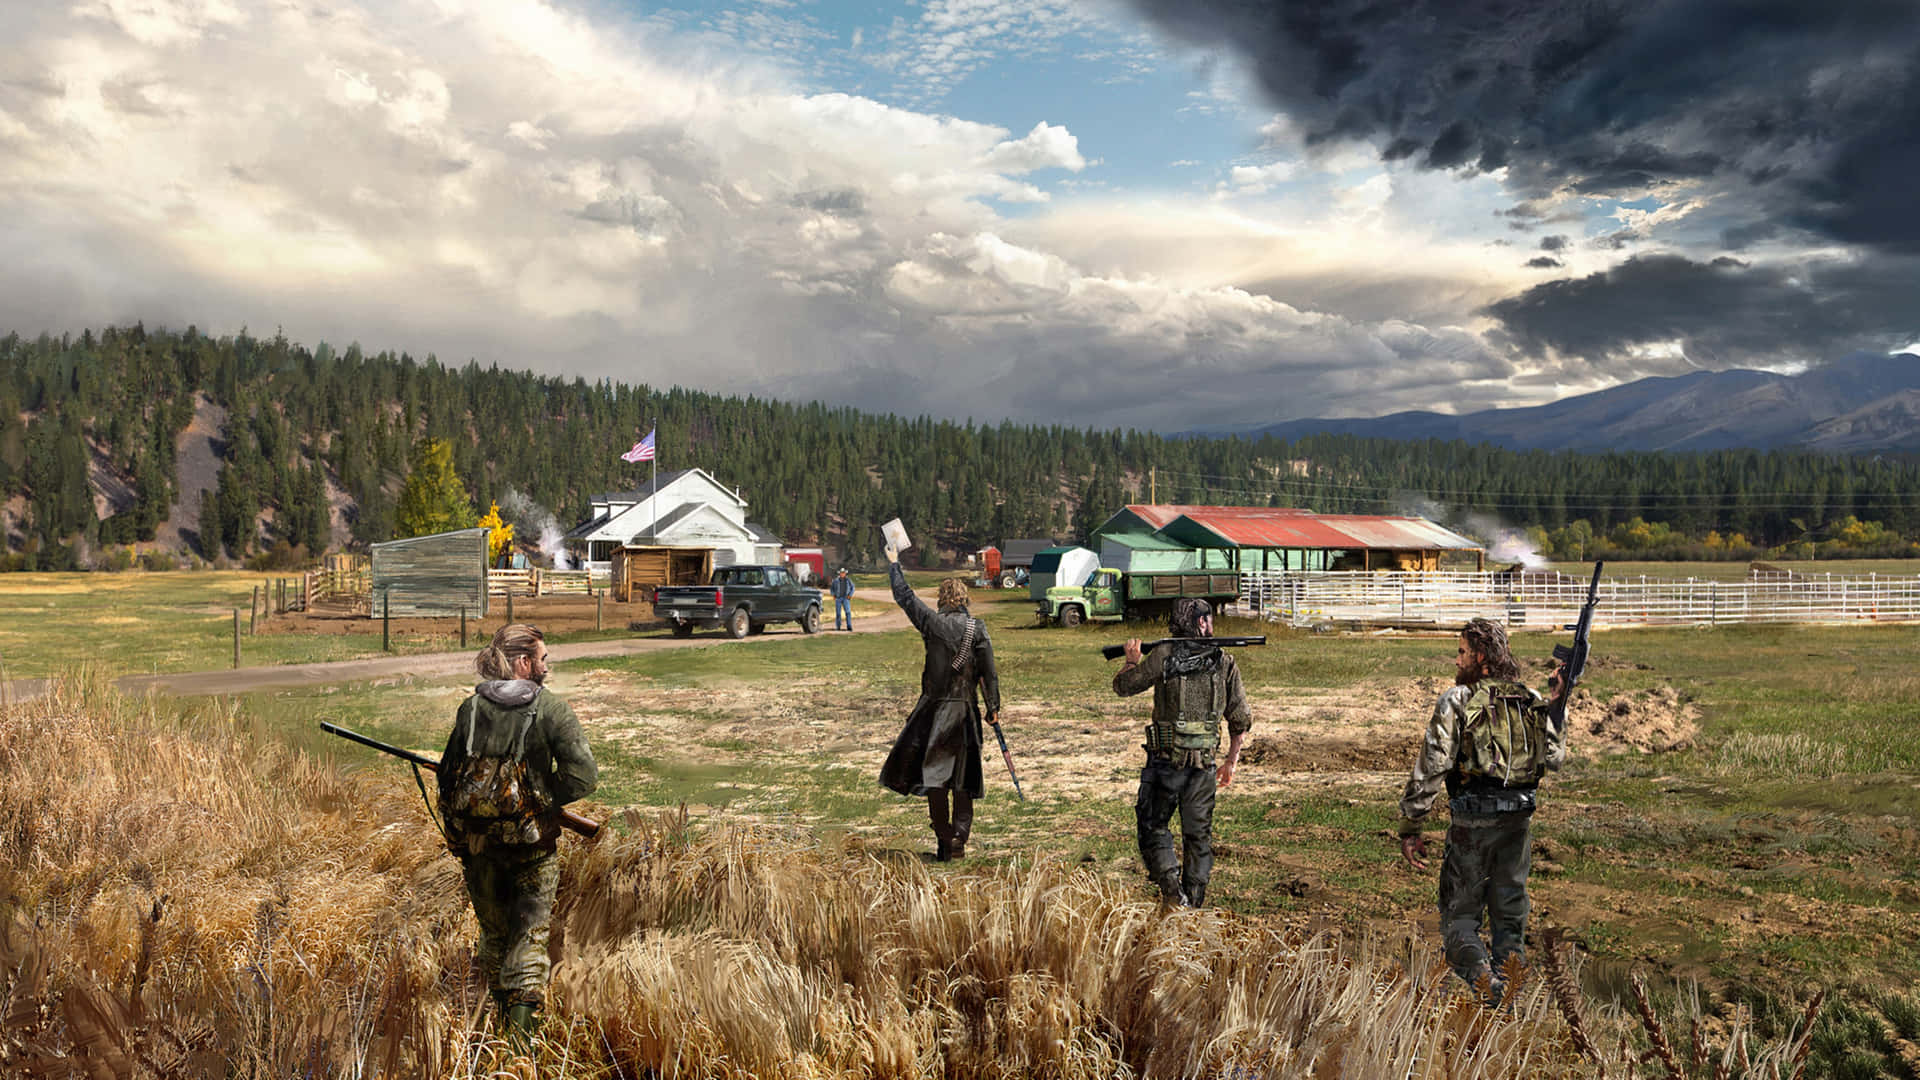 Erlebensie Die Atemberaubenden Visuellen Effekte Von Far Cry 5 In 4k Ultra Hd. Wallpaper